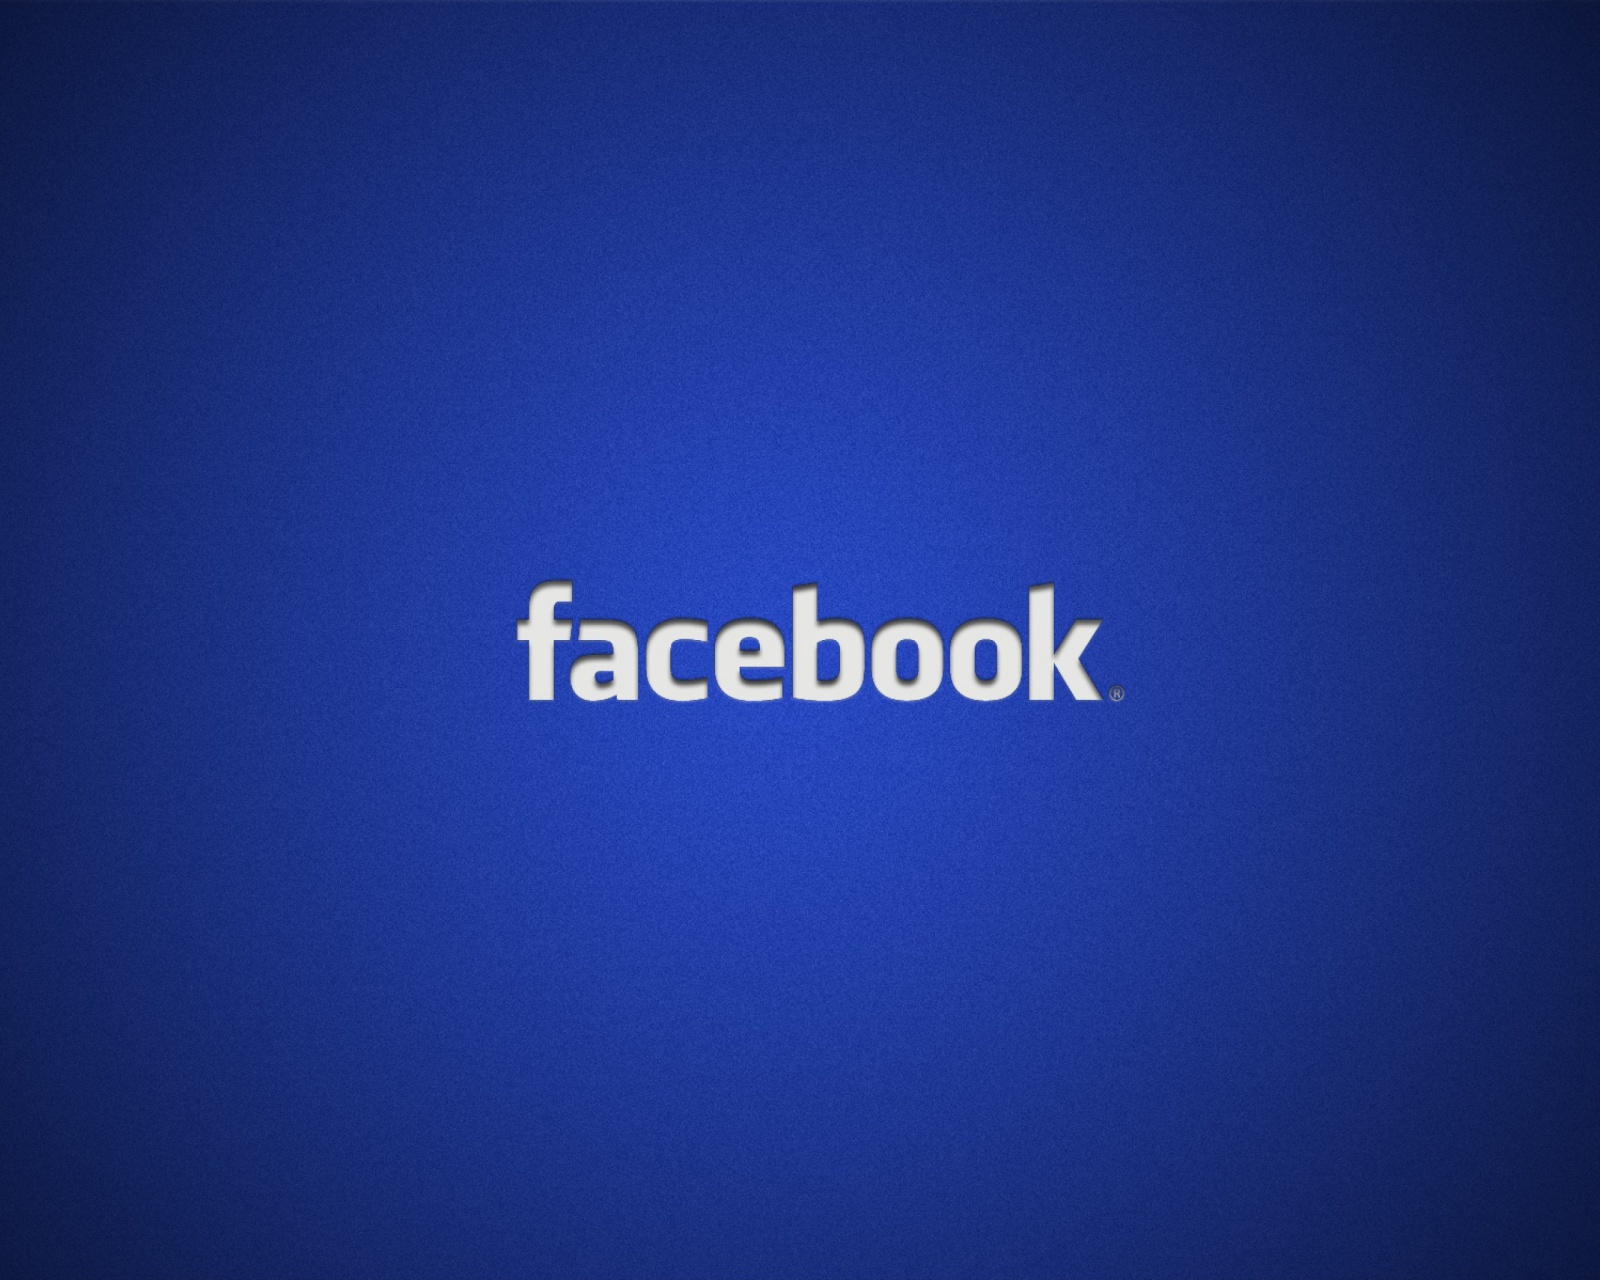 Facebook Logo wallpaper 1600x1280